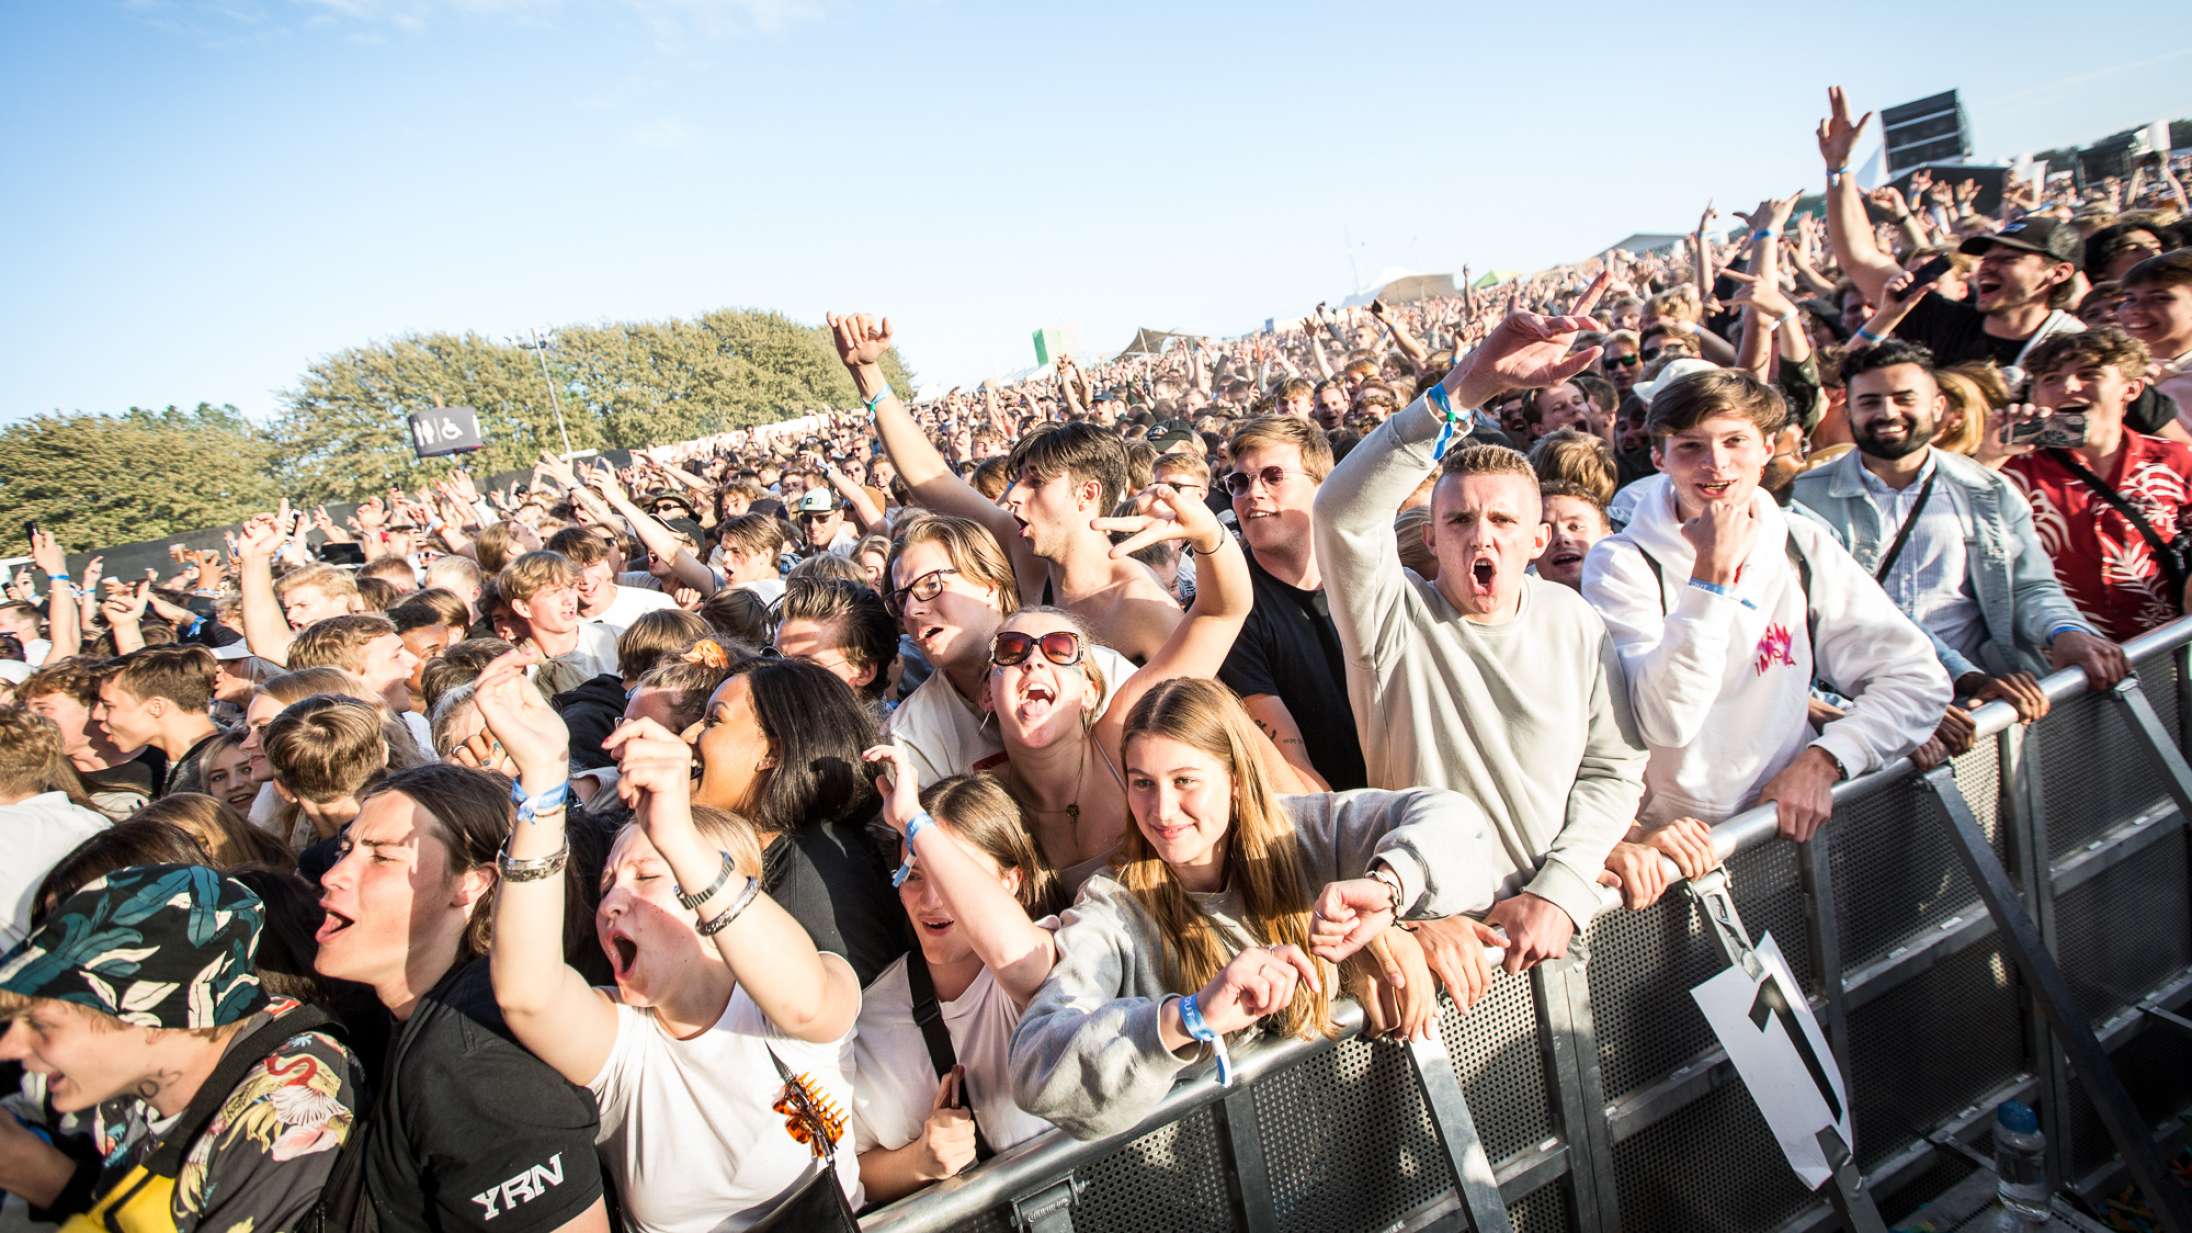 København får ny festival til sommer med plads til 15.000 gæster – rutinerede kræfter står bag